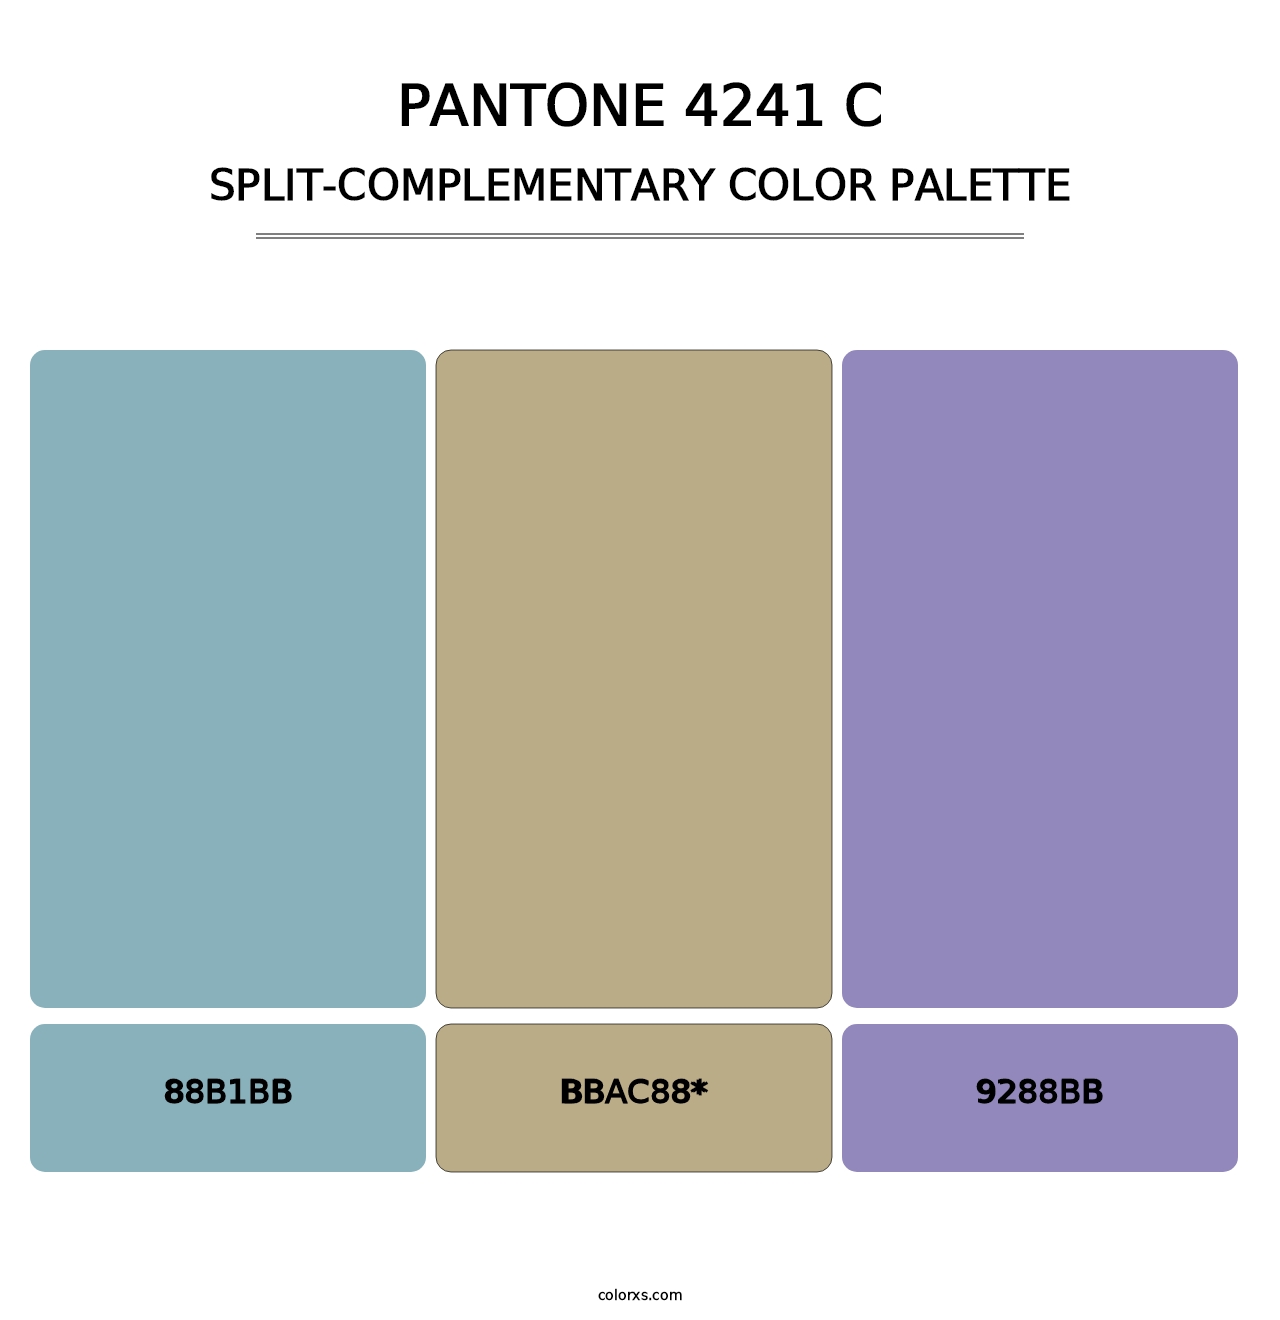 PANTONE 4241 C - Split-Complementary Color Palette